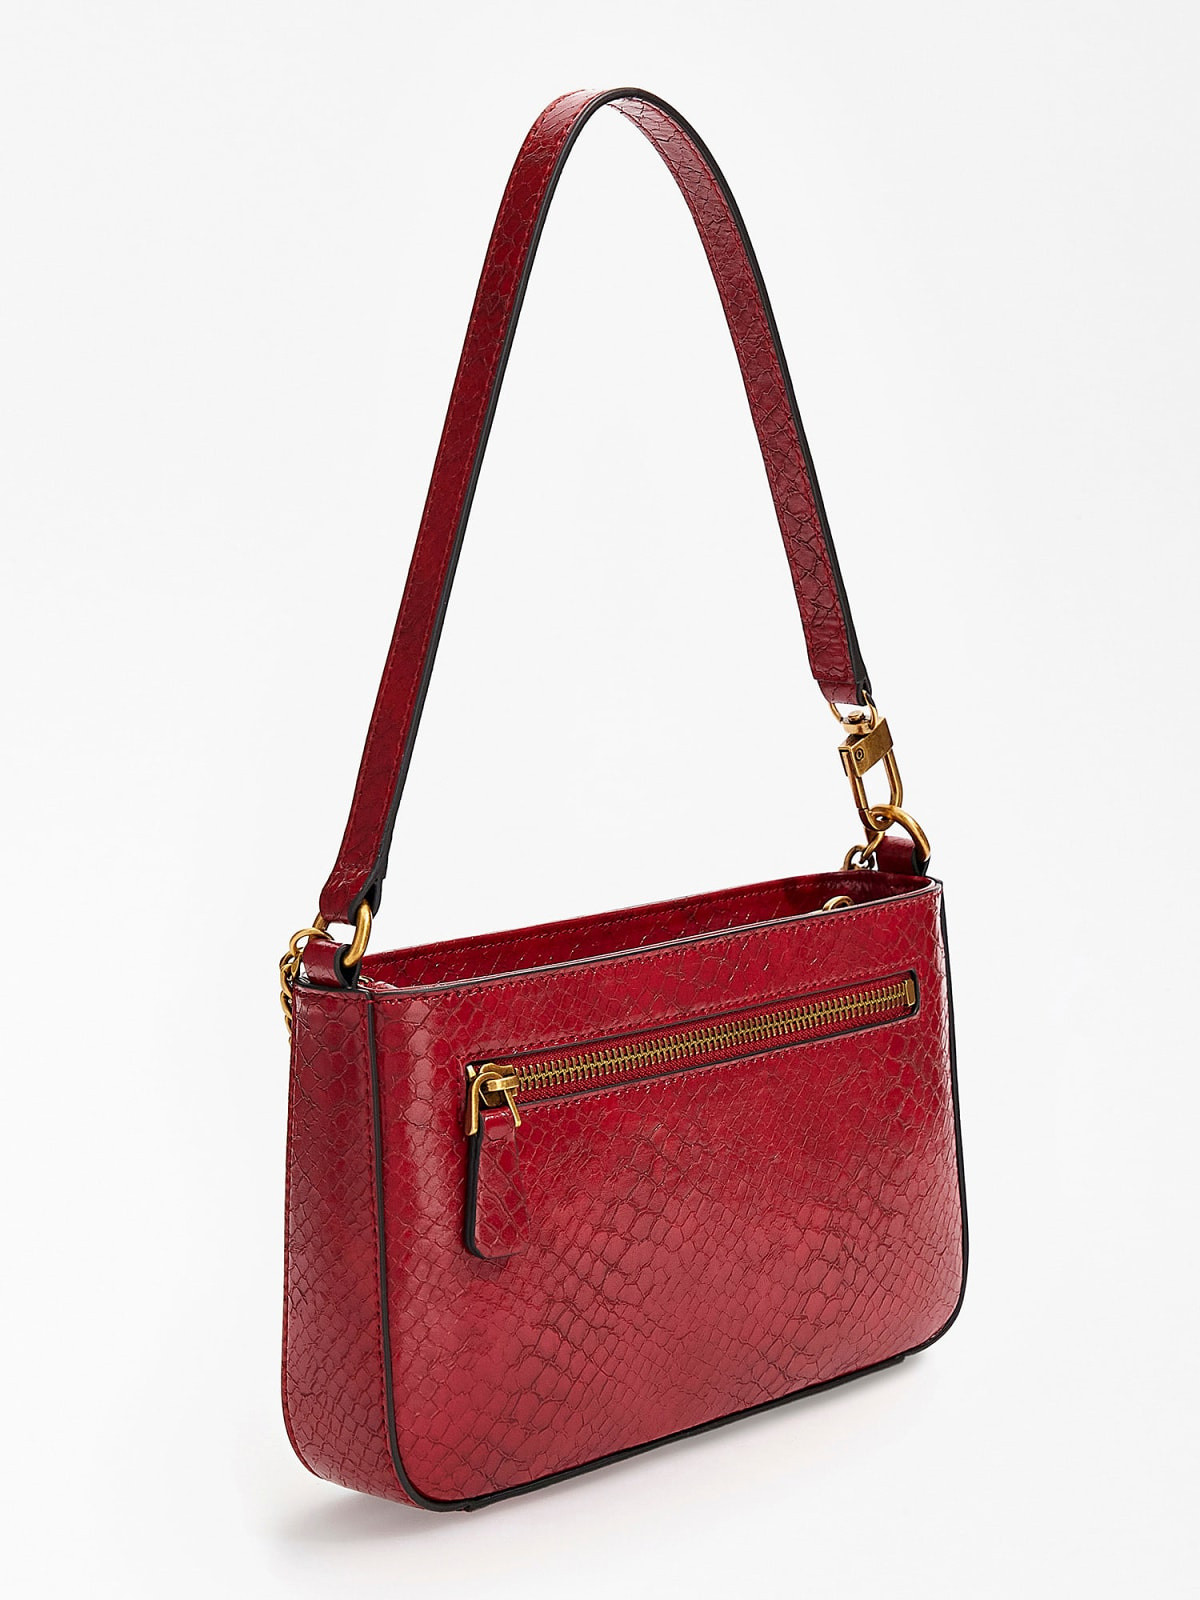 Python effect shoulder bag in mini size, Red, large image number 1